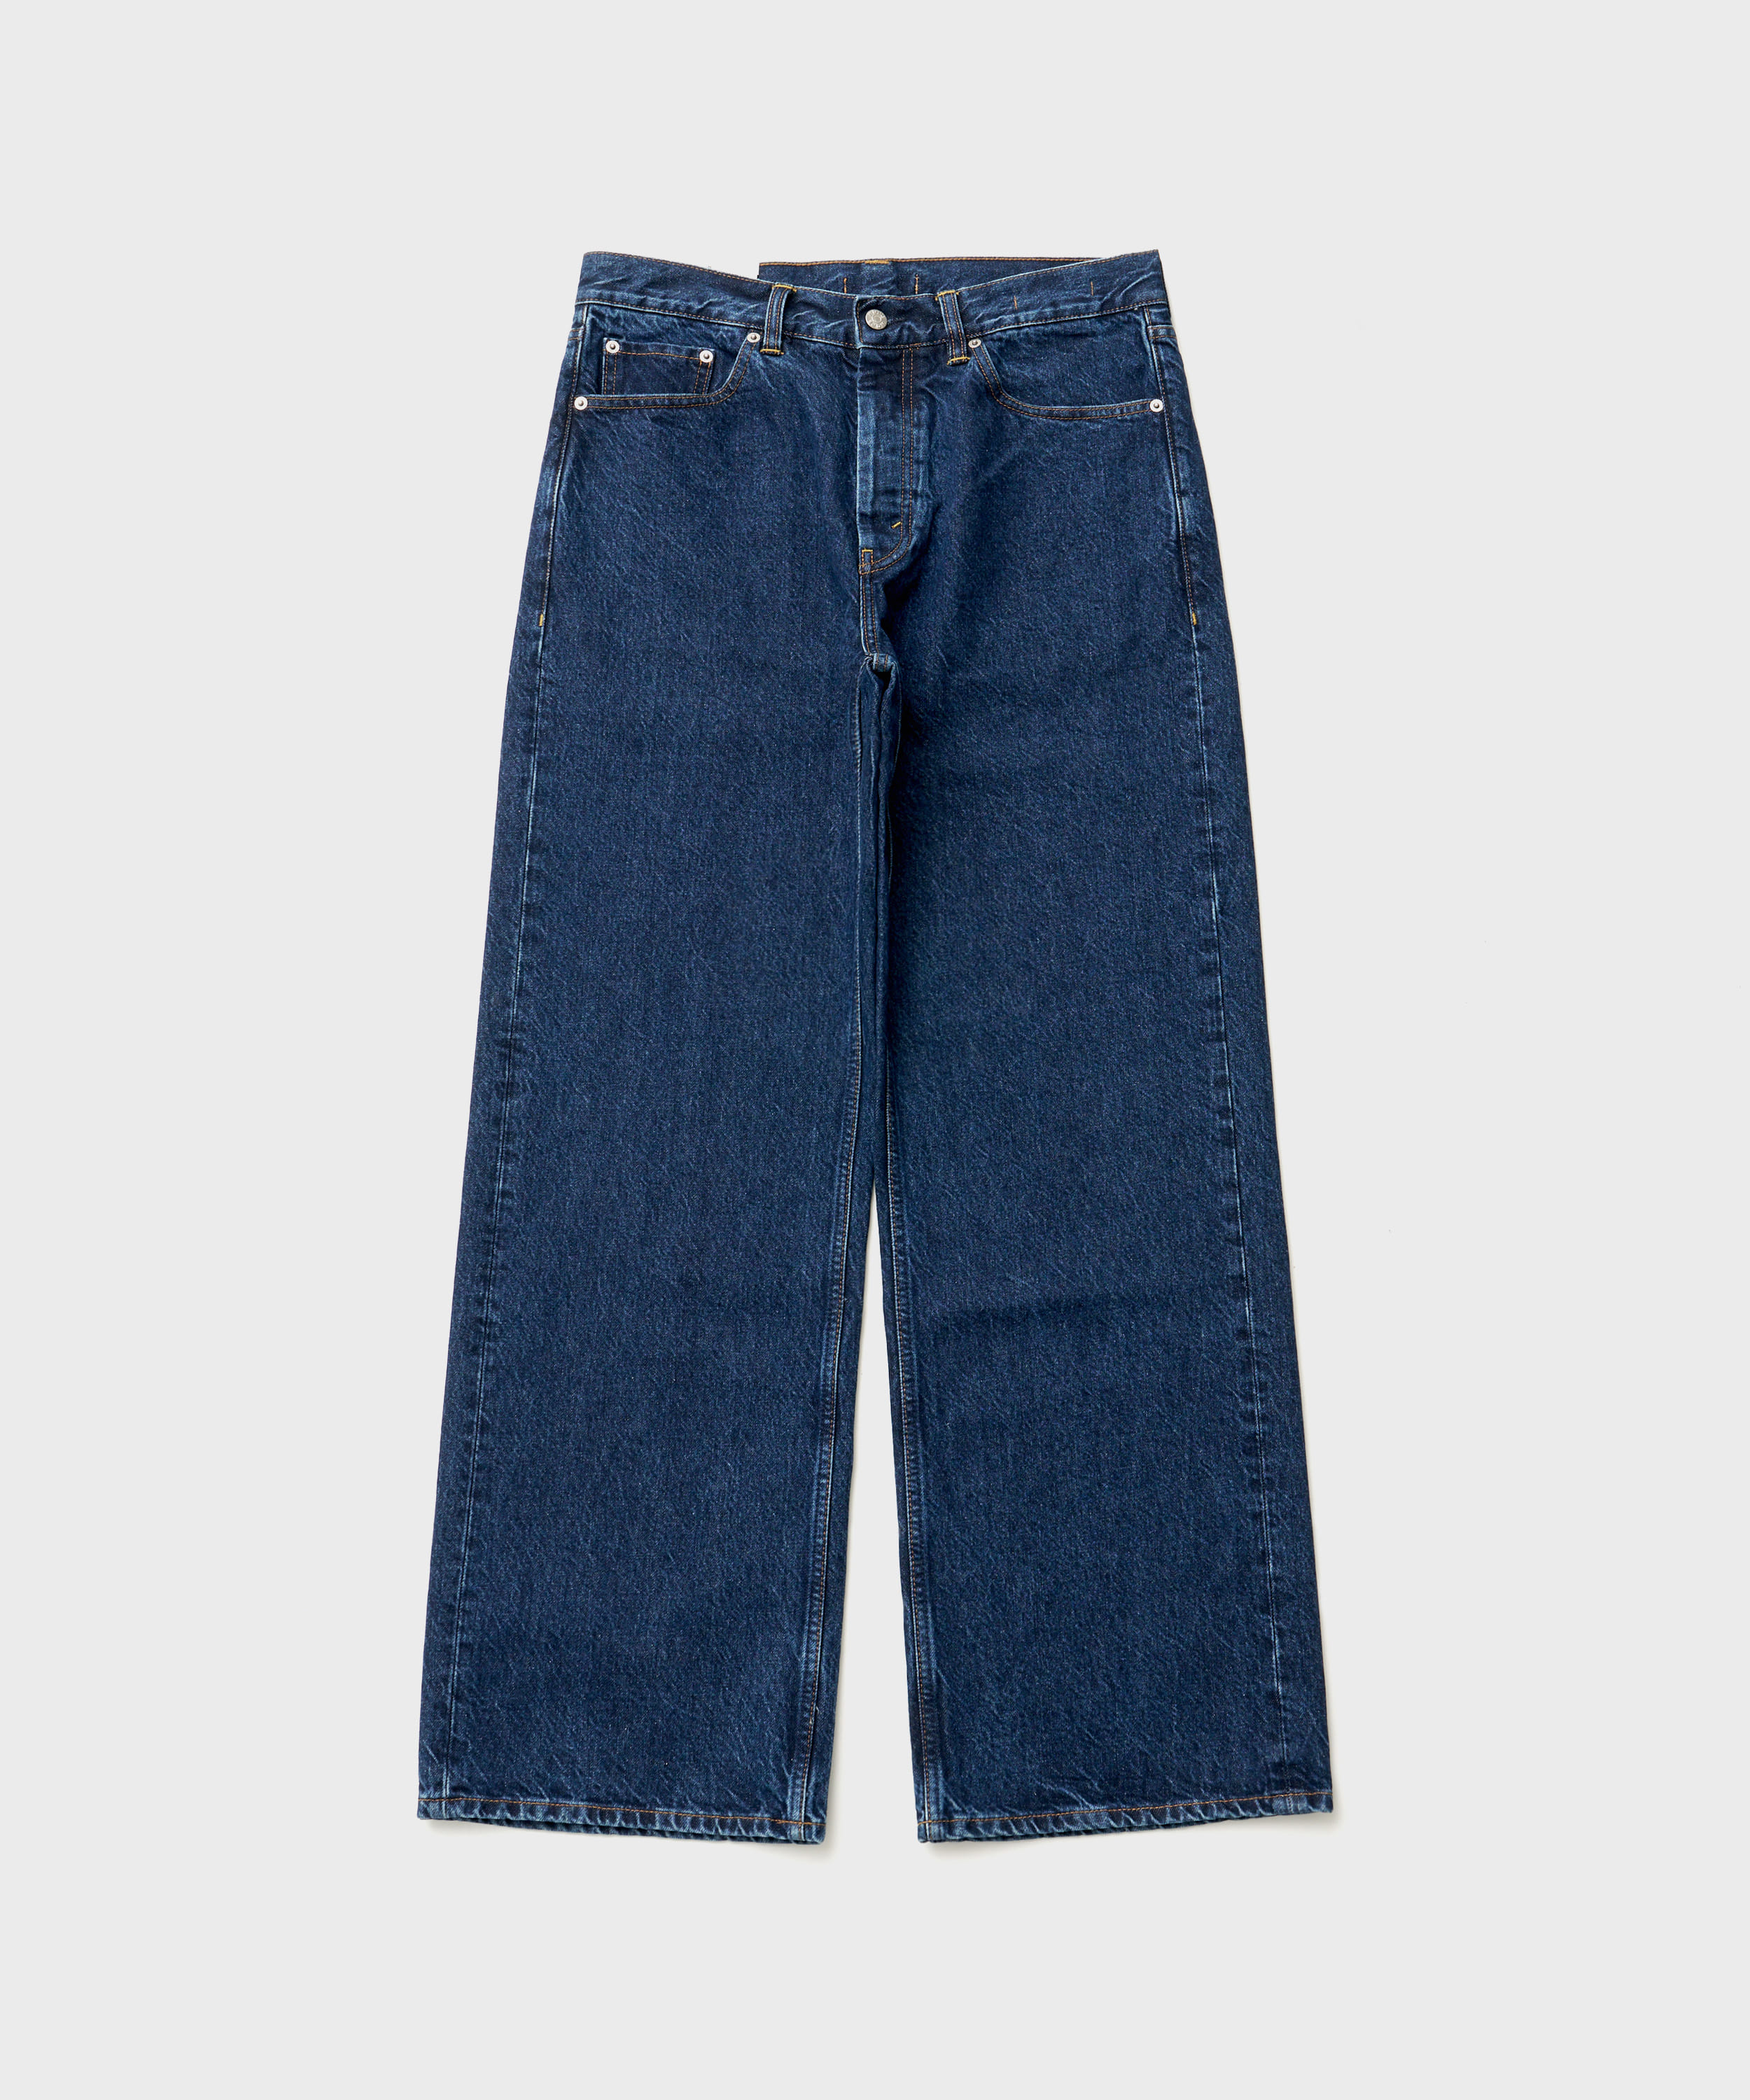 (w) Criss Jeans (DK Indigo Wash)